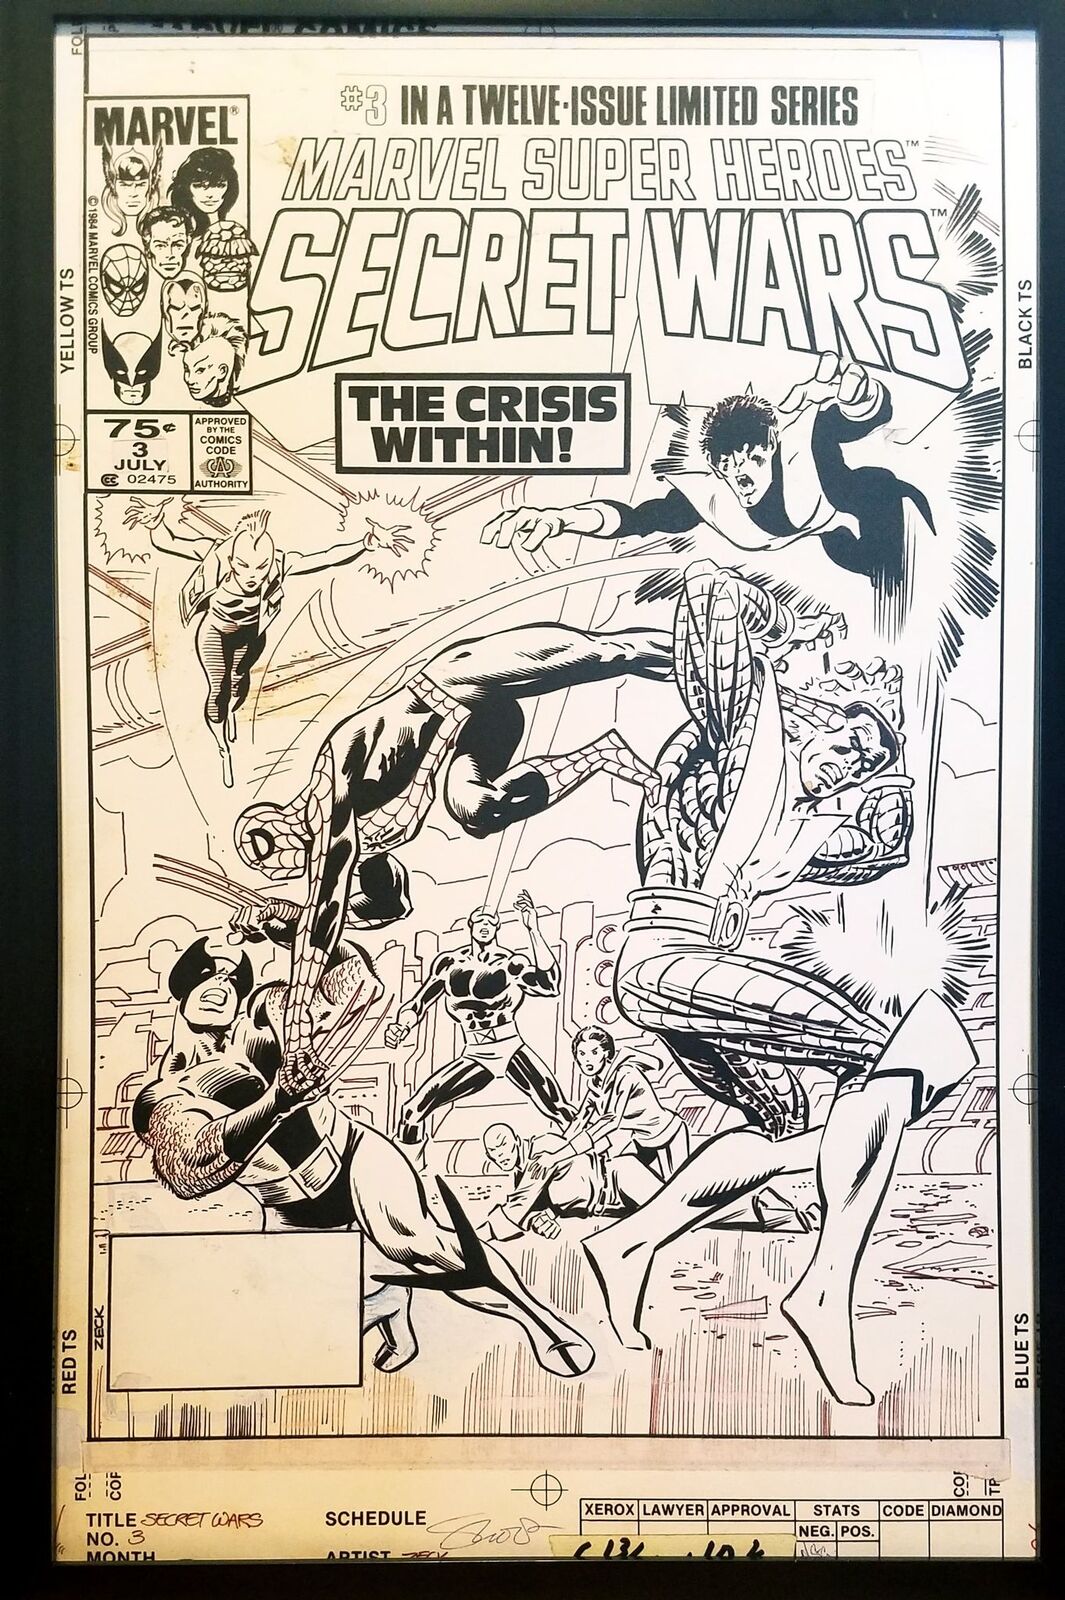 Secret Wars #3 X-Men Spider-Man Mike Zeck 11x17 FRAMED Original Art Poster Marve